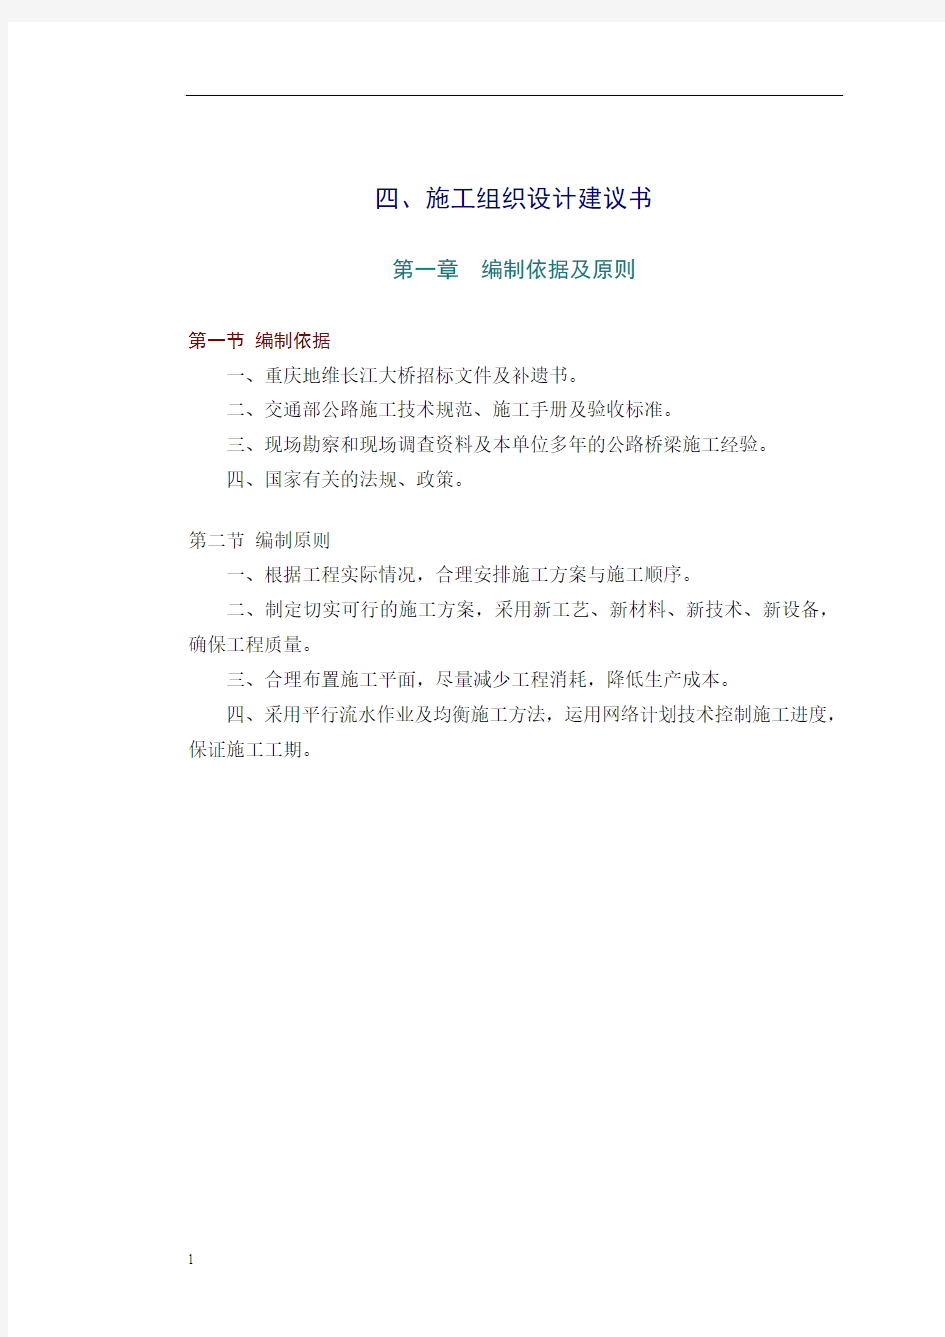 地维长江大桥施工组织设计建议书1全解